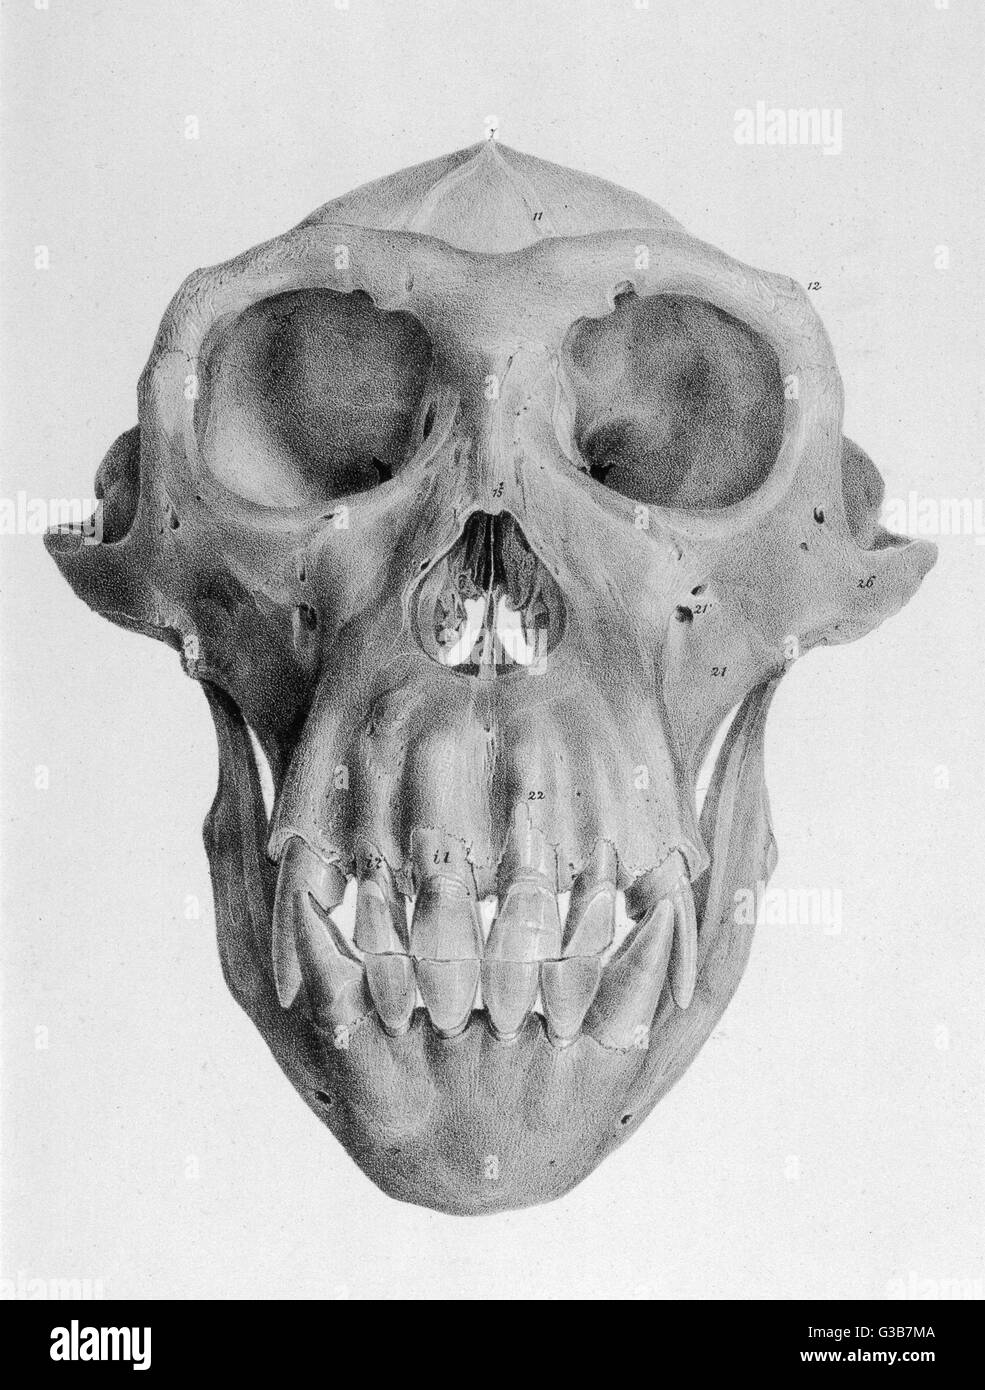 Cranio di un ape data: 1849 Foto Stock